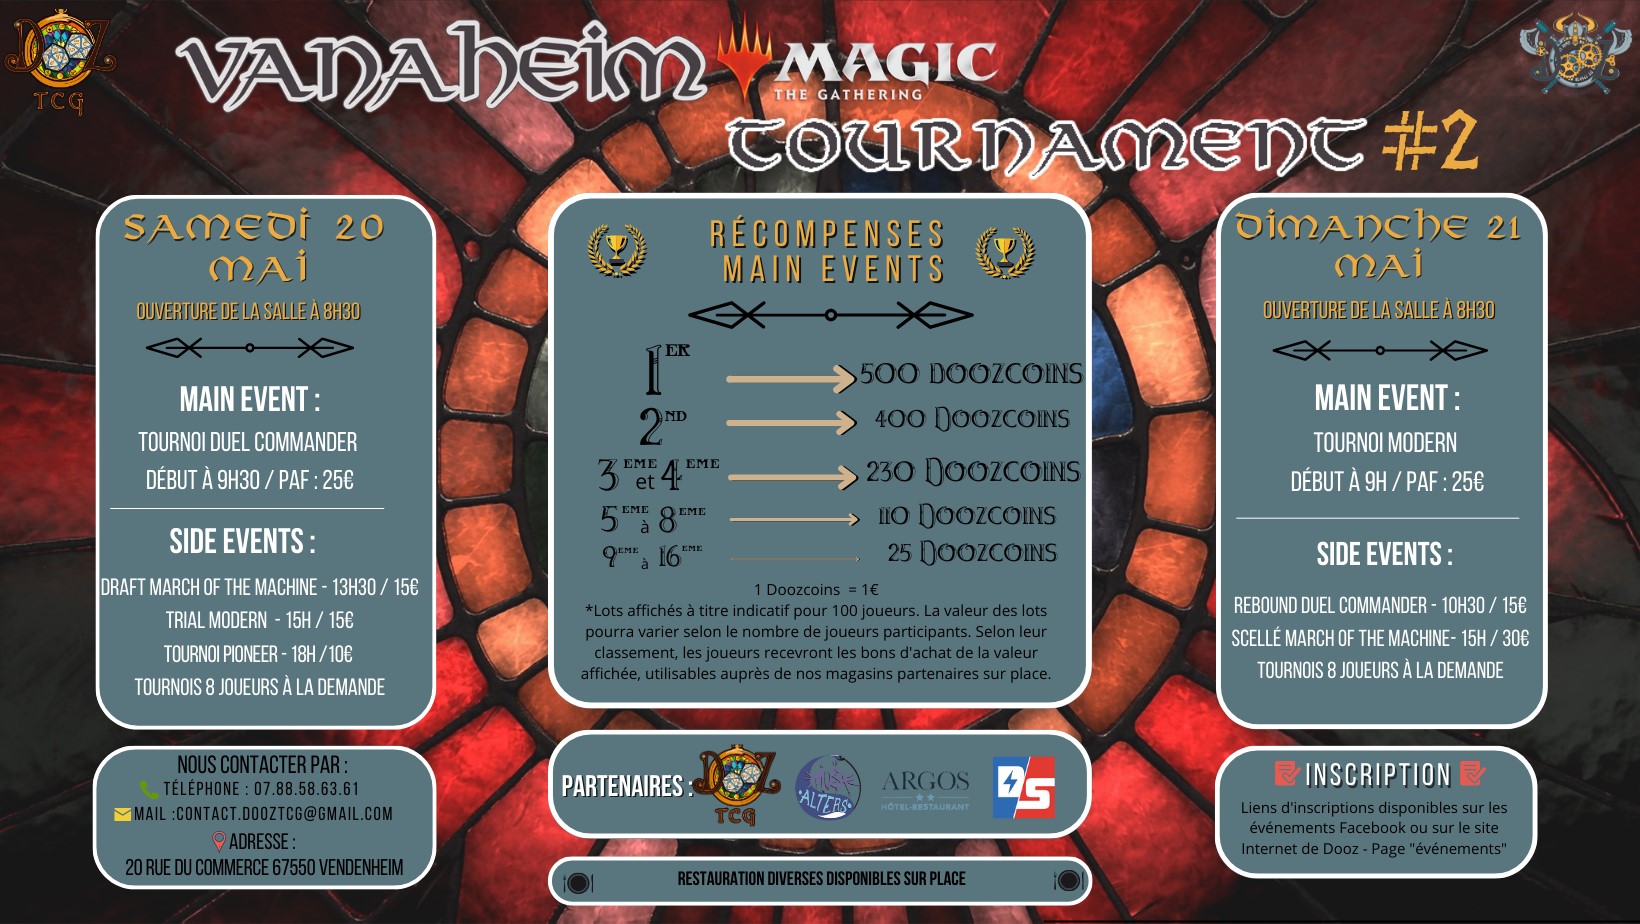 Vanaheim Magic Tournament #2